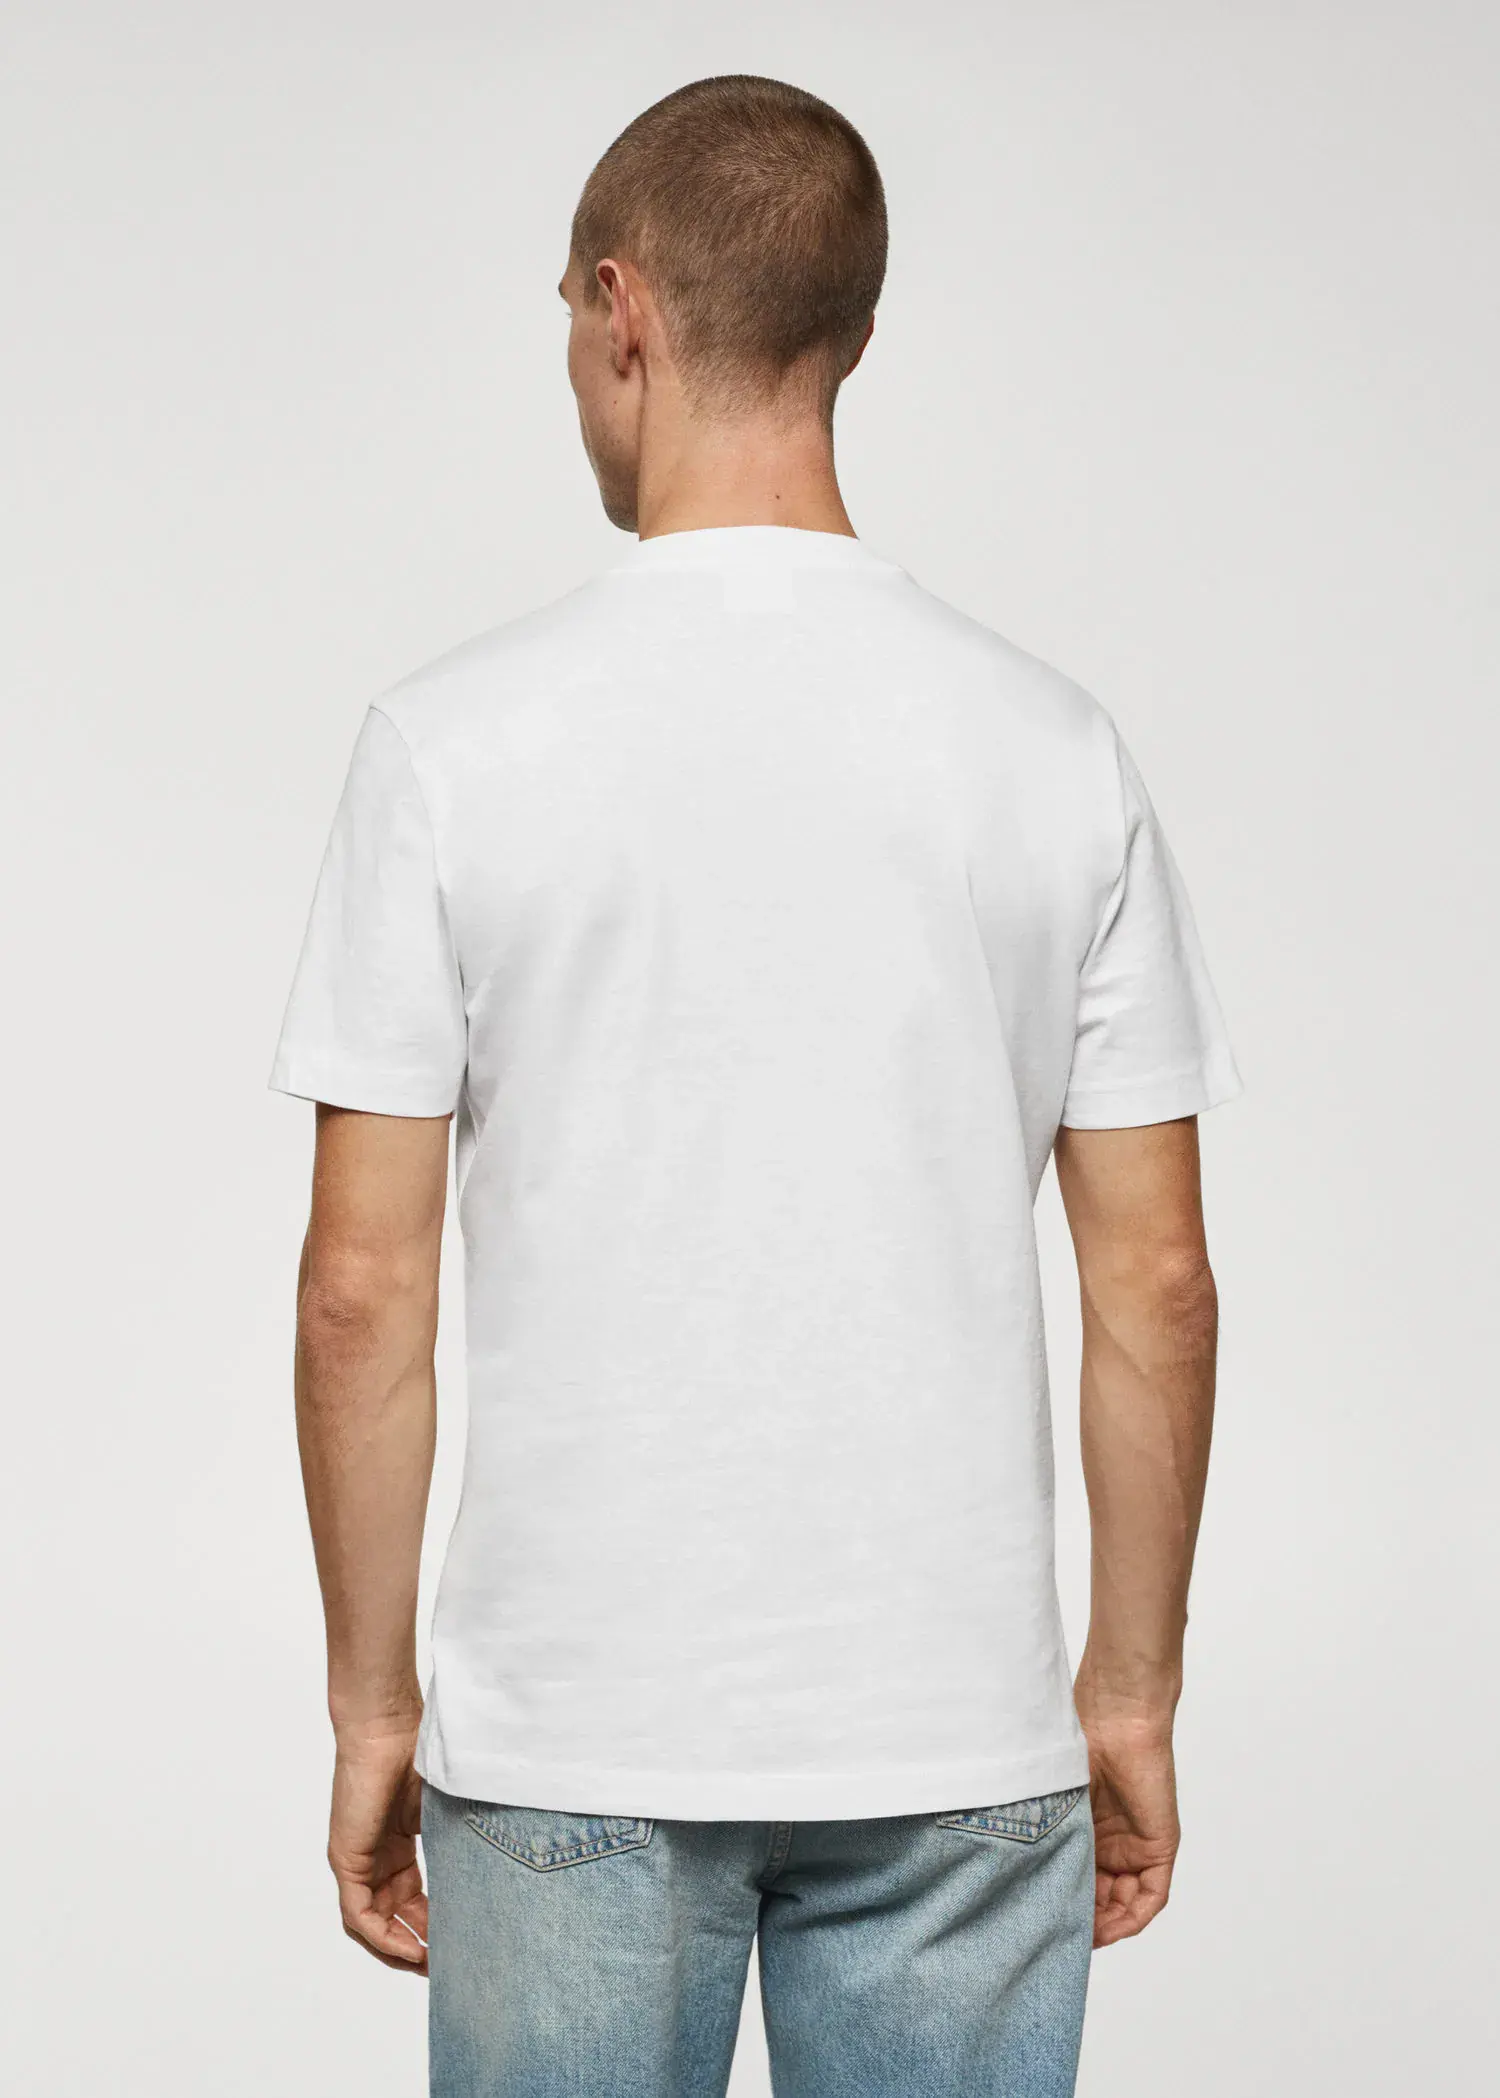 Mango T-shirt básica de algodão com gola em V. 3